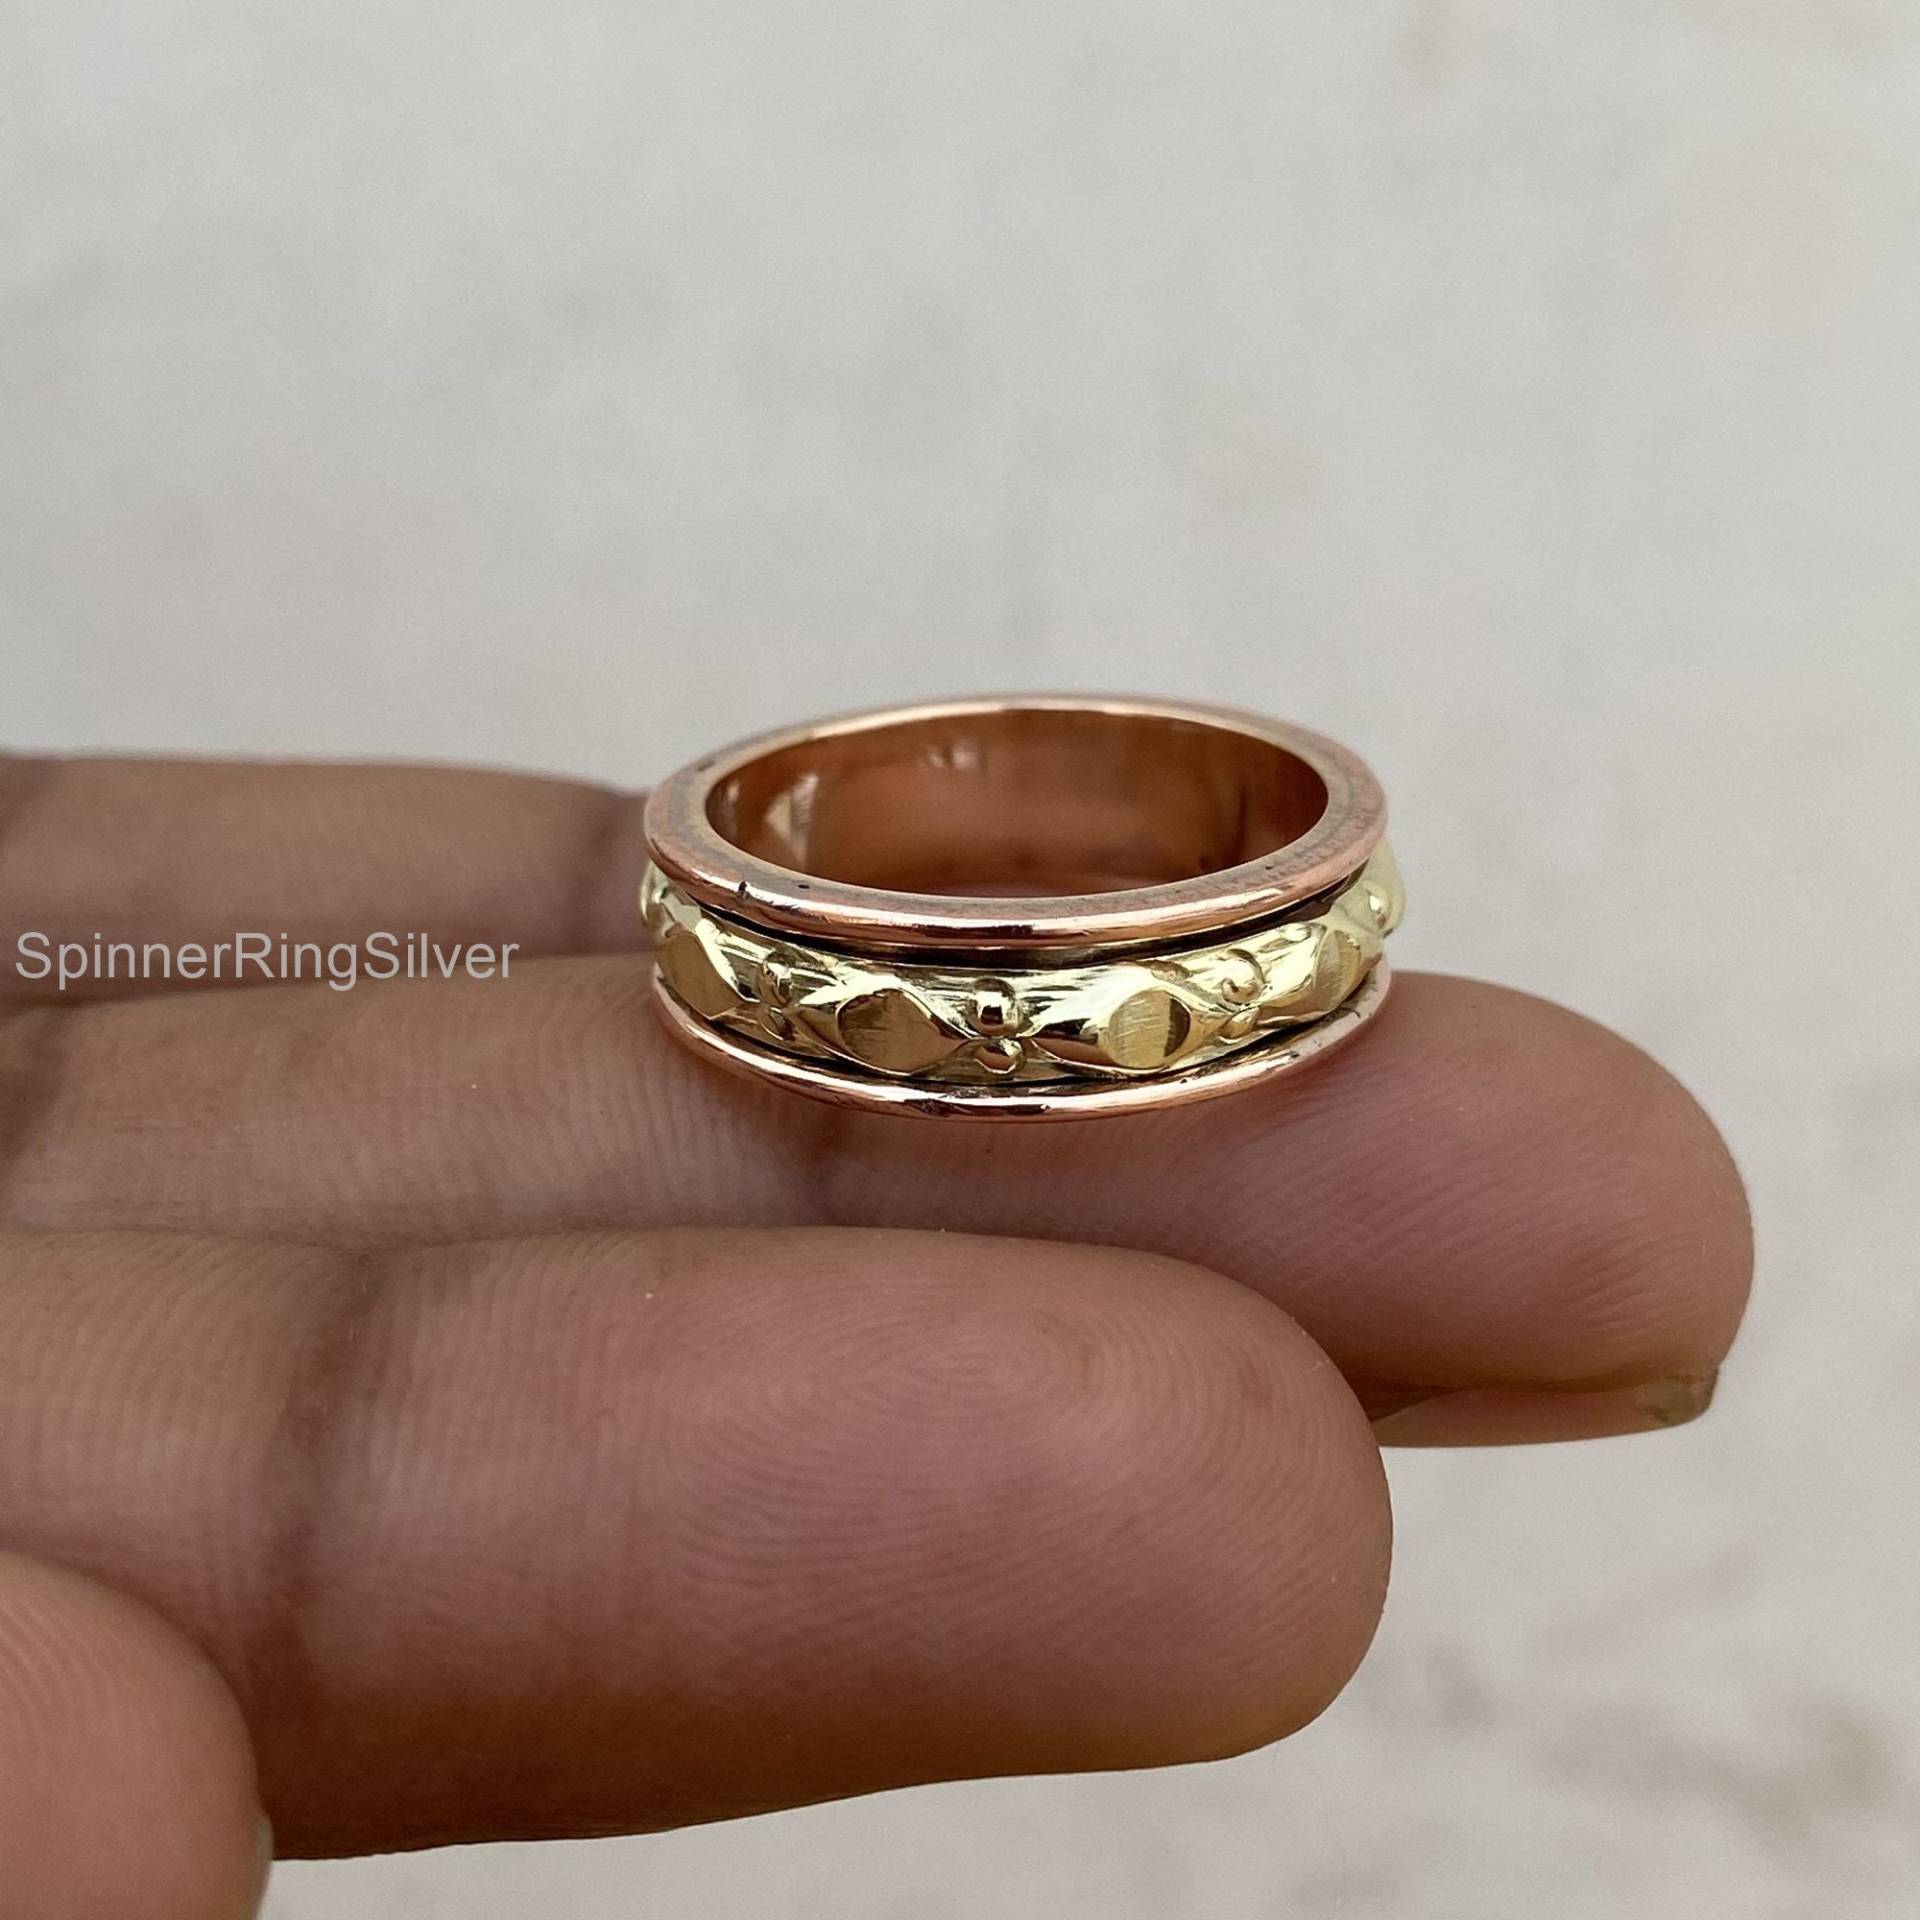 Kupfer Messing Ring, Spinnring, Daumen Boho Frauen Handgemachter Spinner Geschenk Für Sie, Schmuck Sk1190 von SpinnerRingSilver